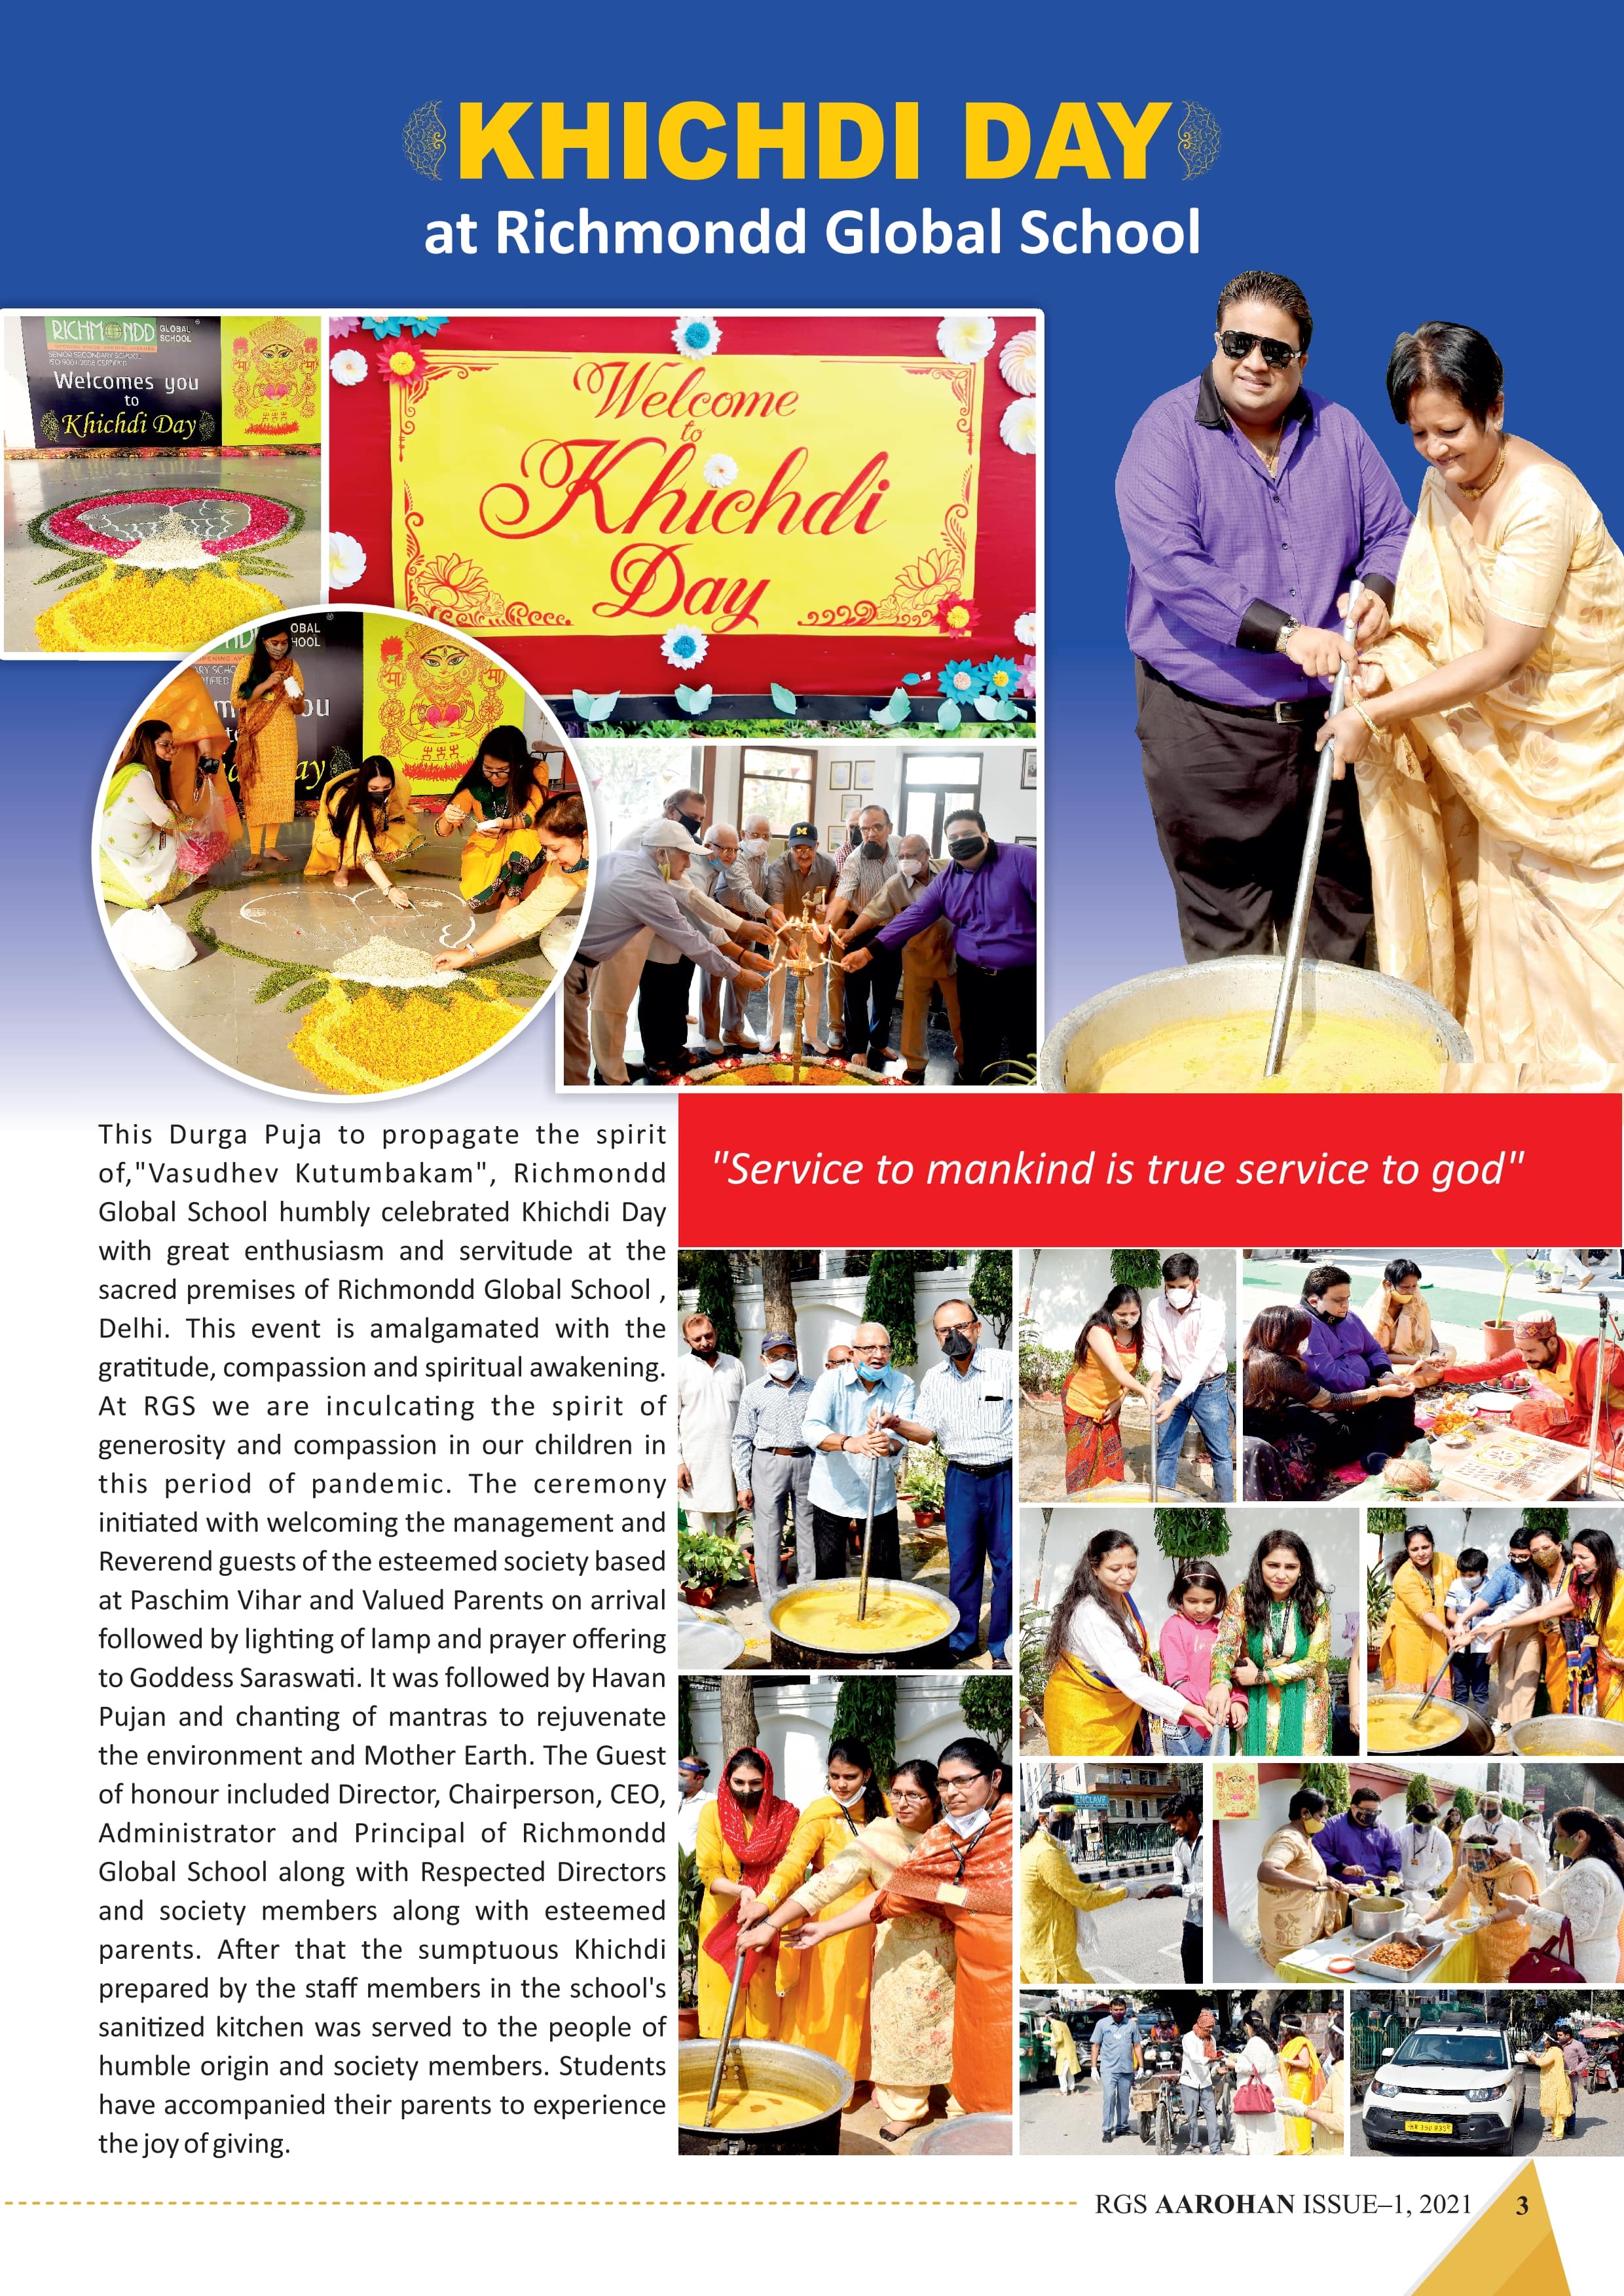 Khichdi Day at Richmondd global school in Delhi